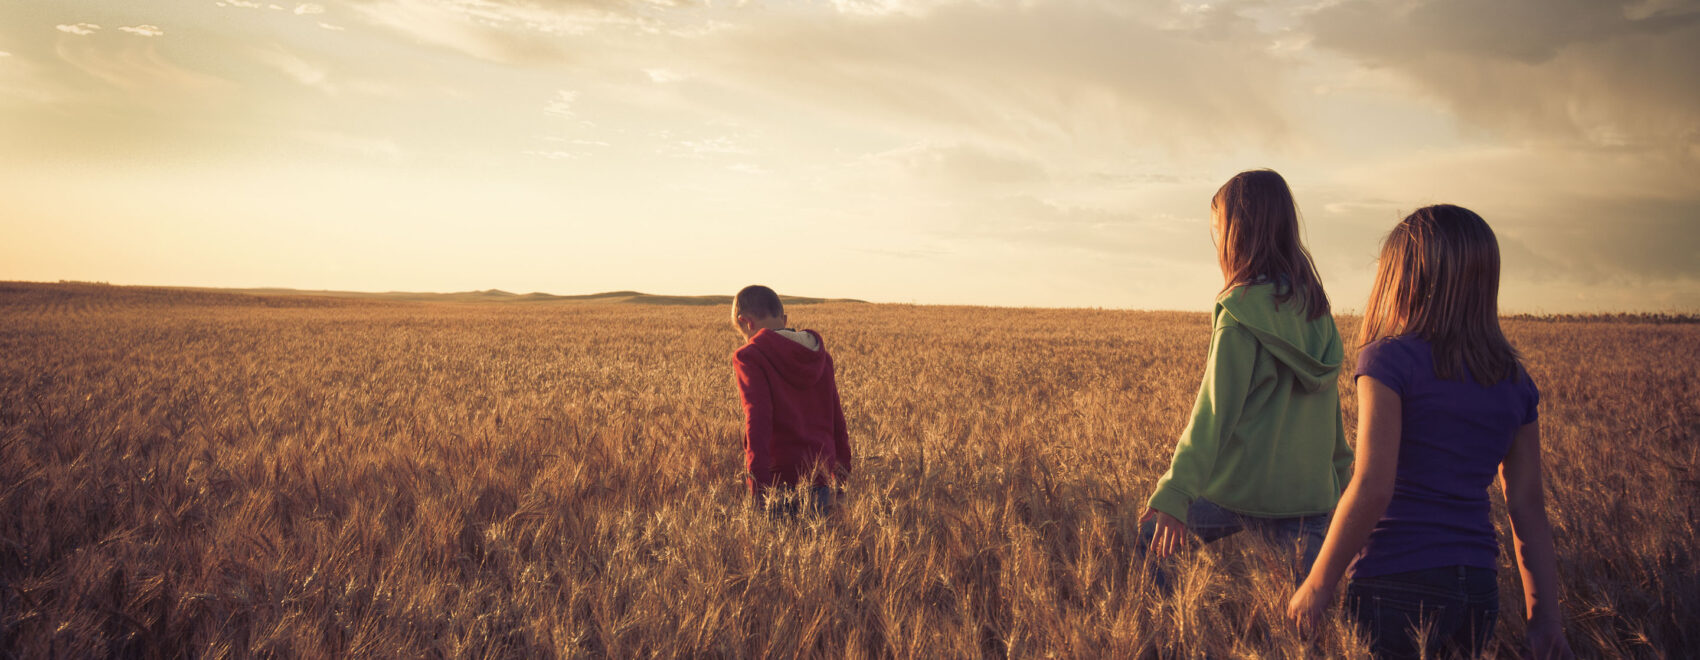 Photo of a children walking in a field